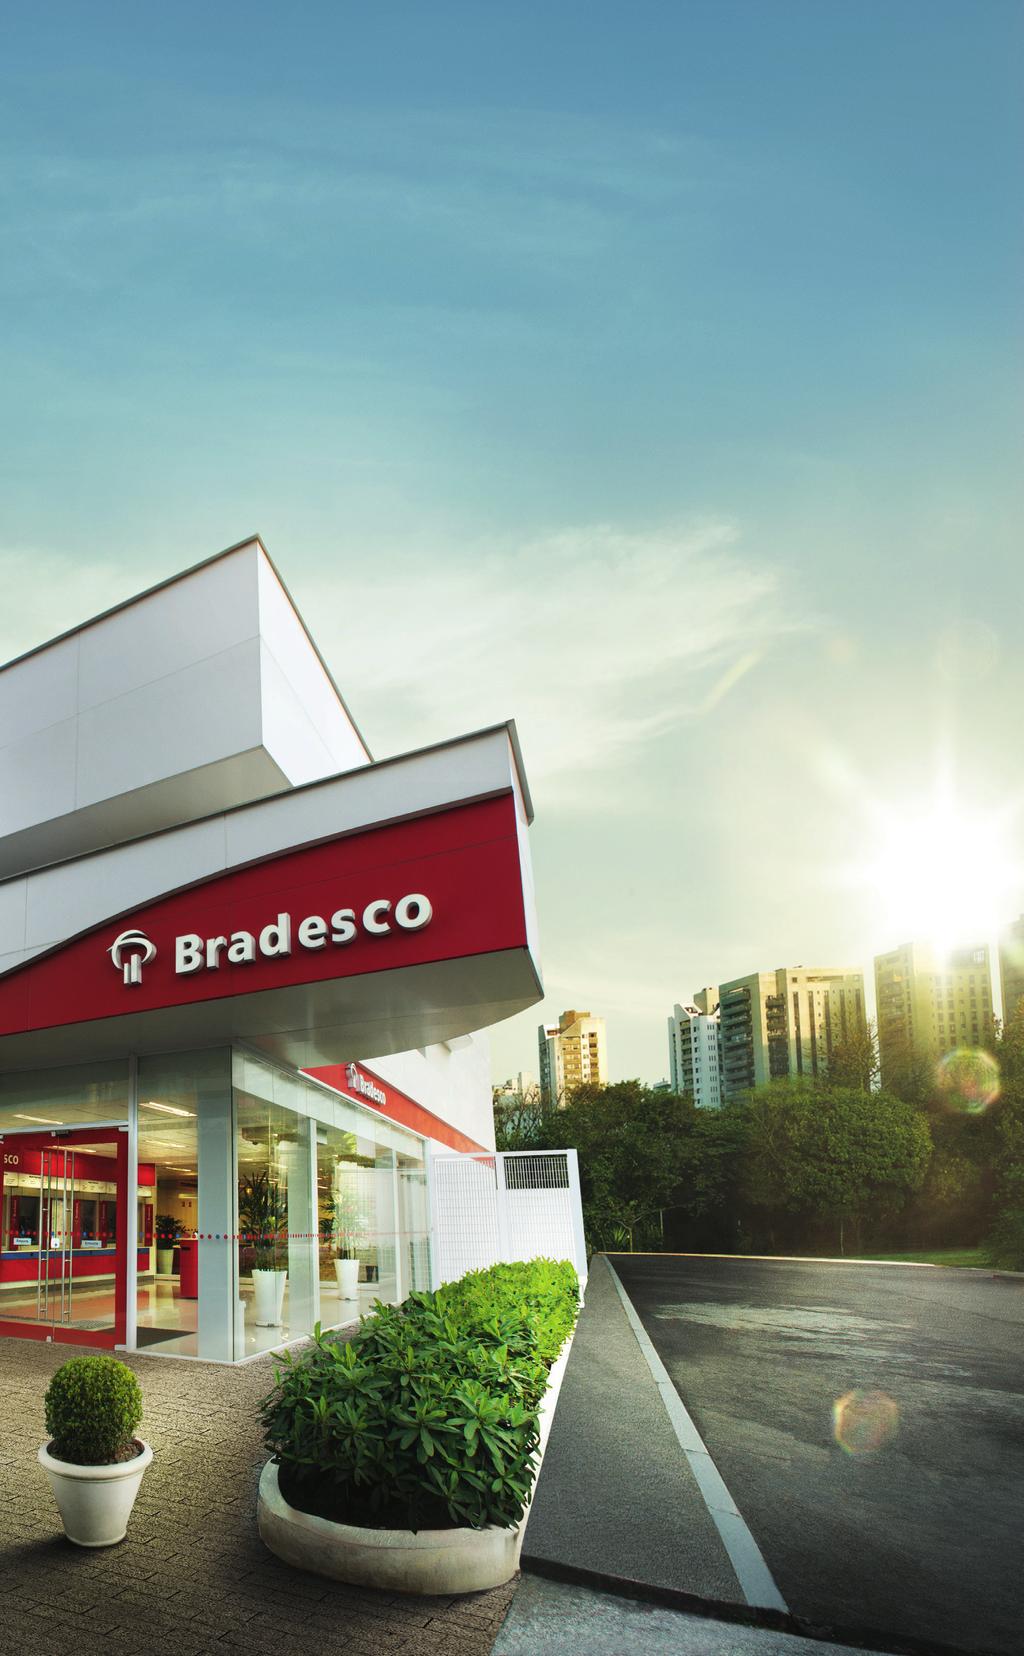 PERFIL O Bradesco é um dos maiores bancos privados do Brasil e a maior Seguradora da América Latina, com valor de mercado de R$ 171,6 bilhões*, observado em 30 de junho de 2018.